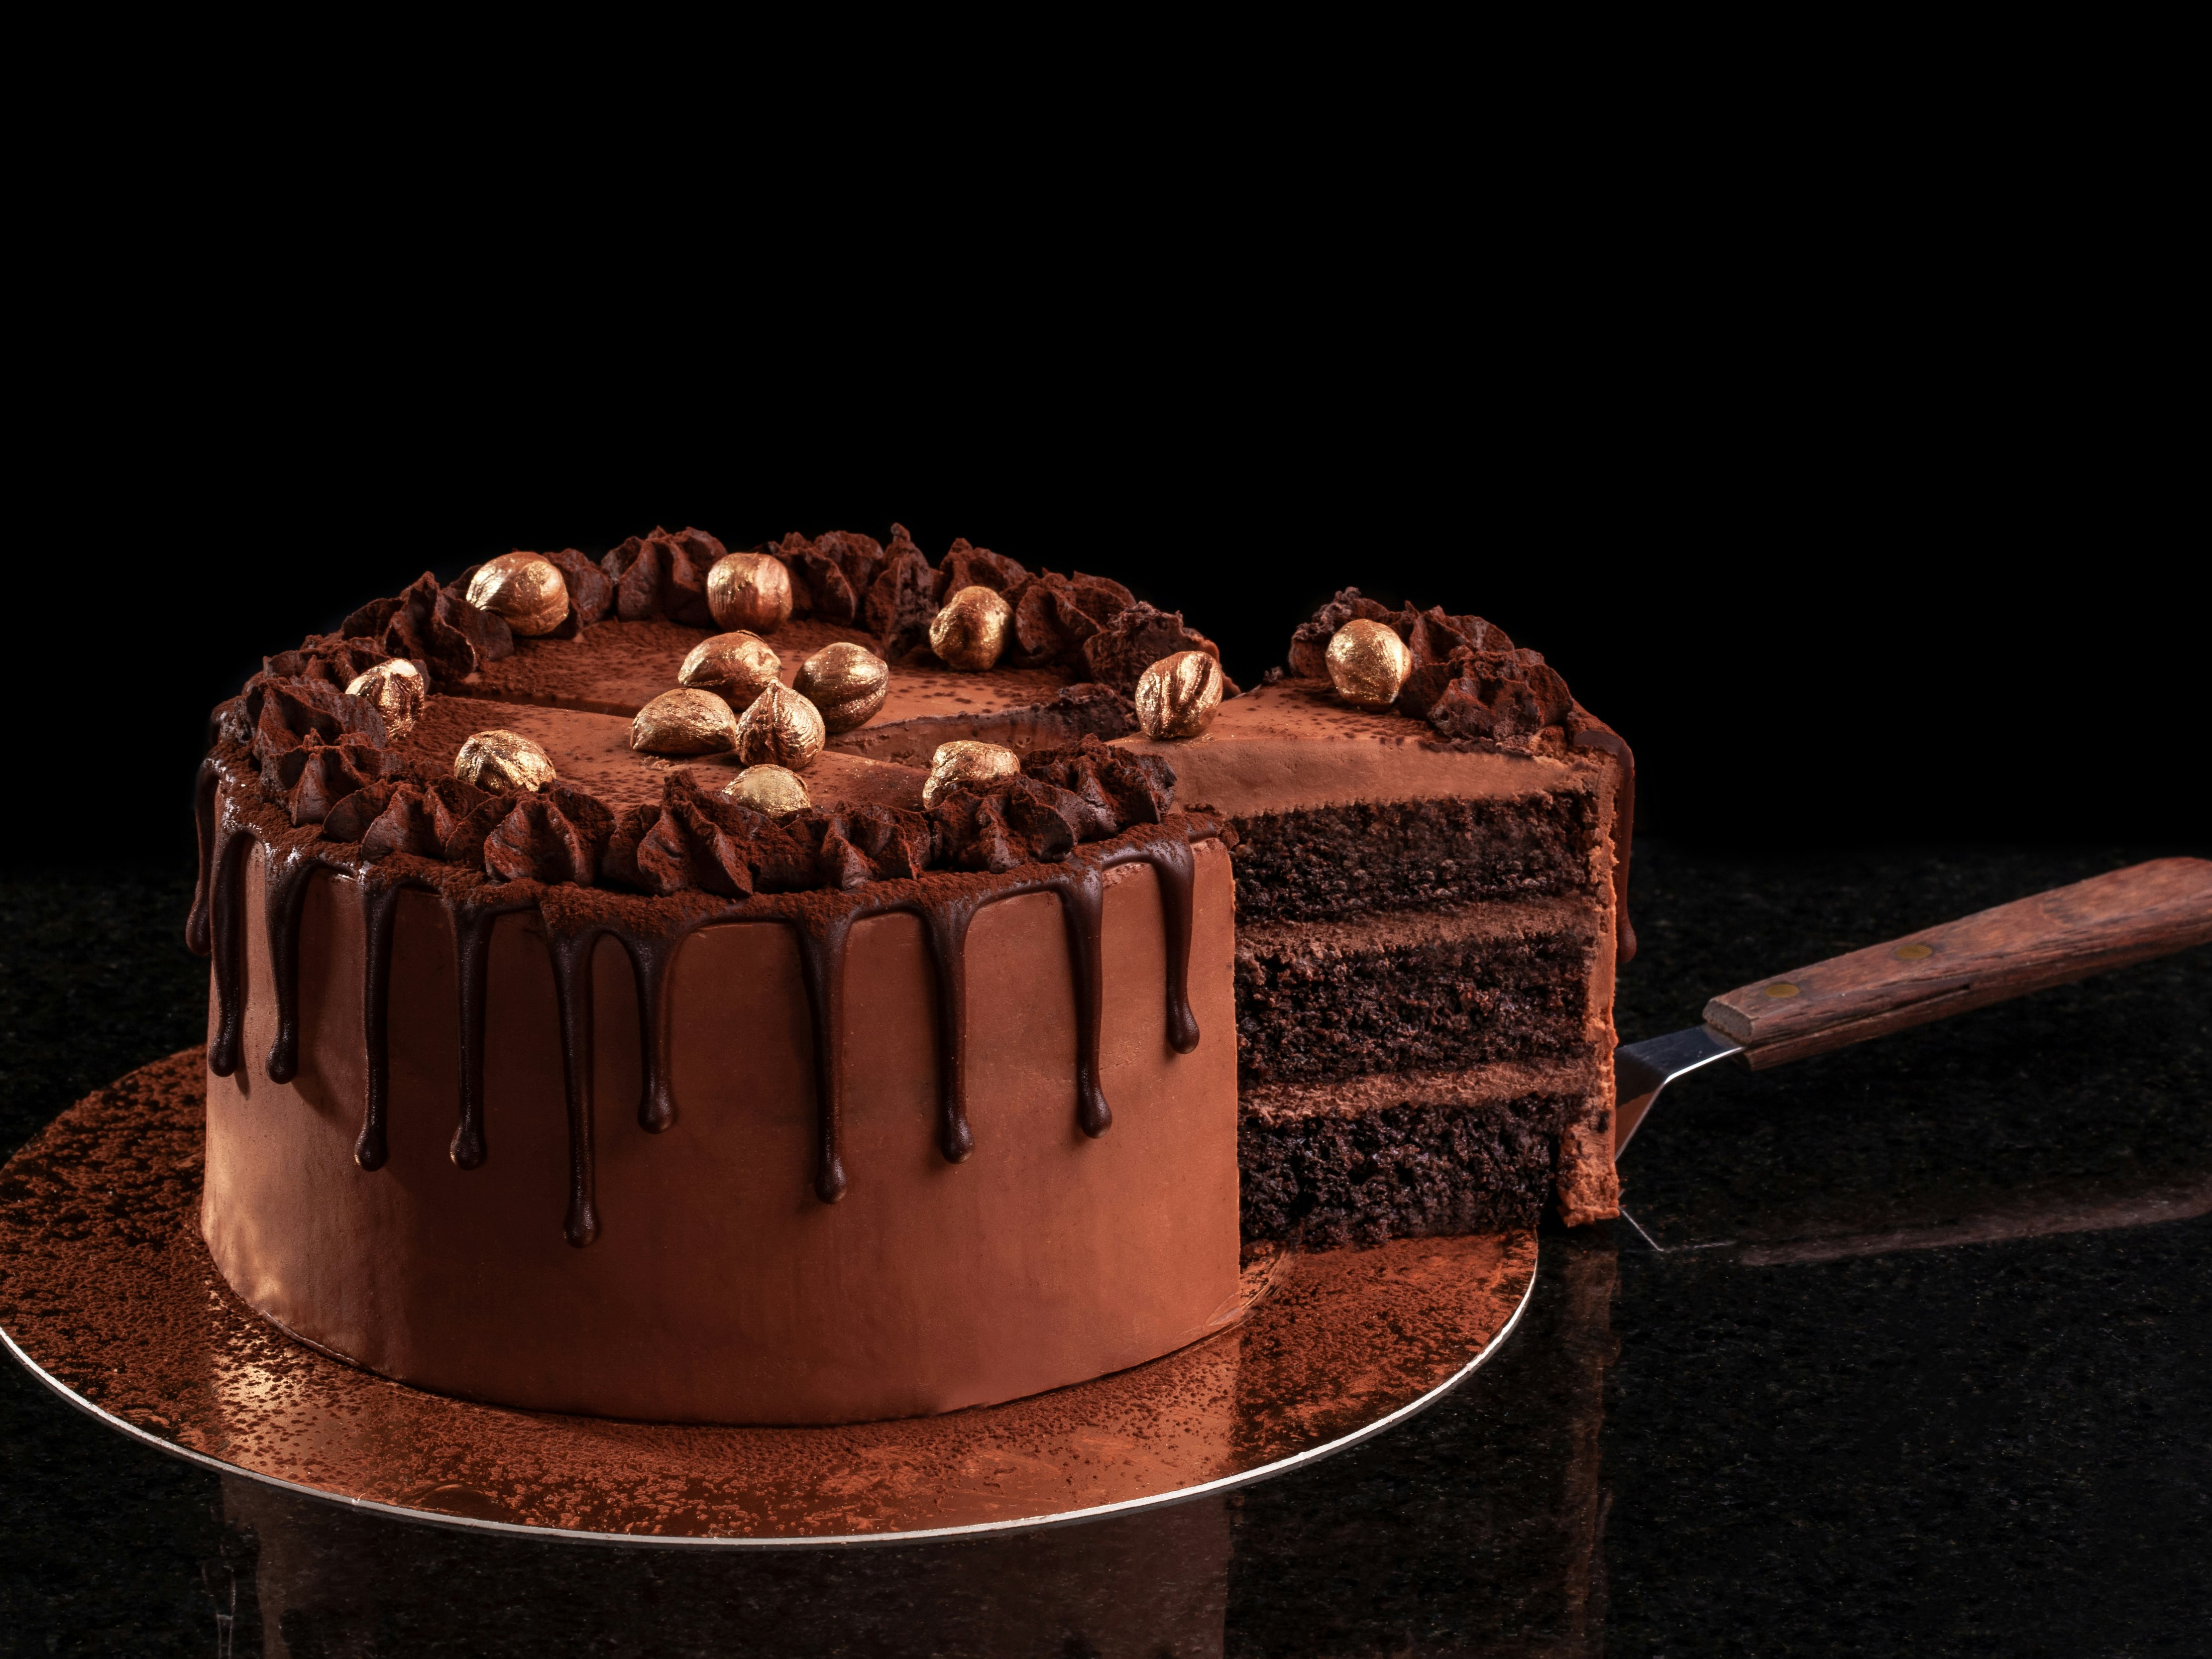 Bilde av en sjokoladekake på gullfat med sort bakgrunn hvor det en kakespade har kuttet opp en bit